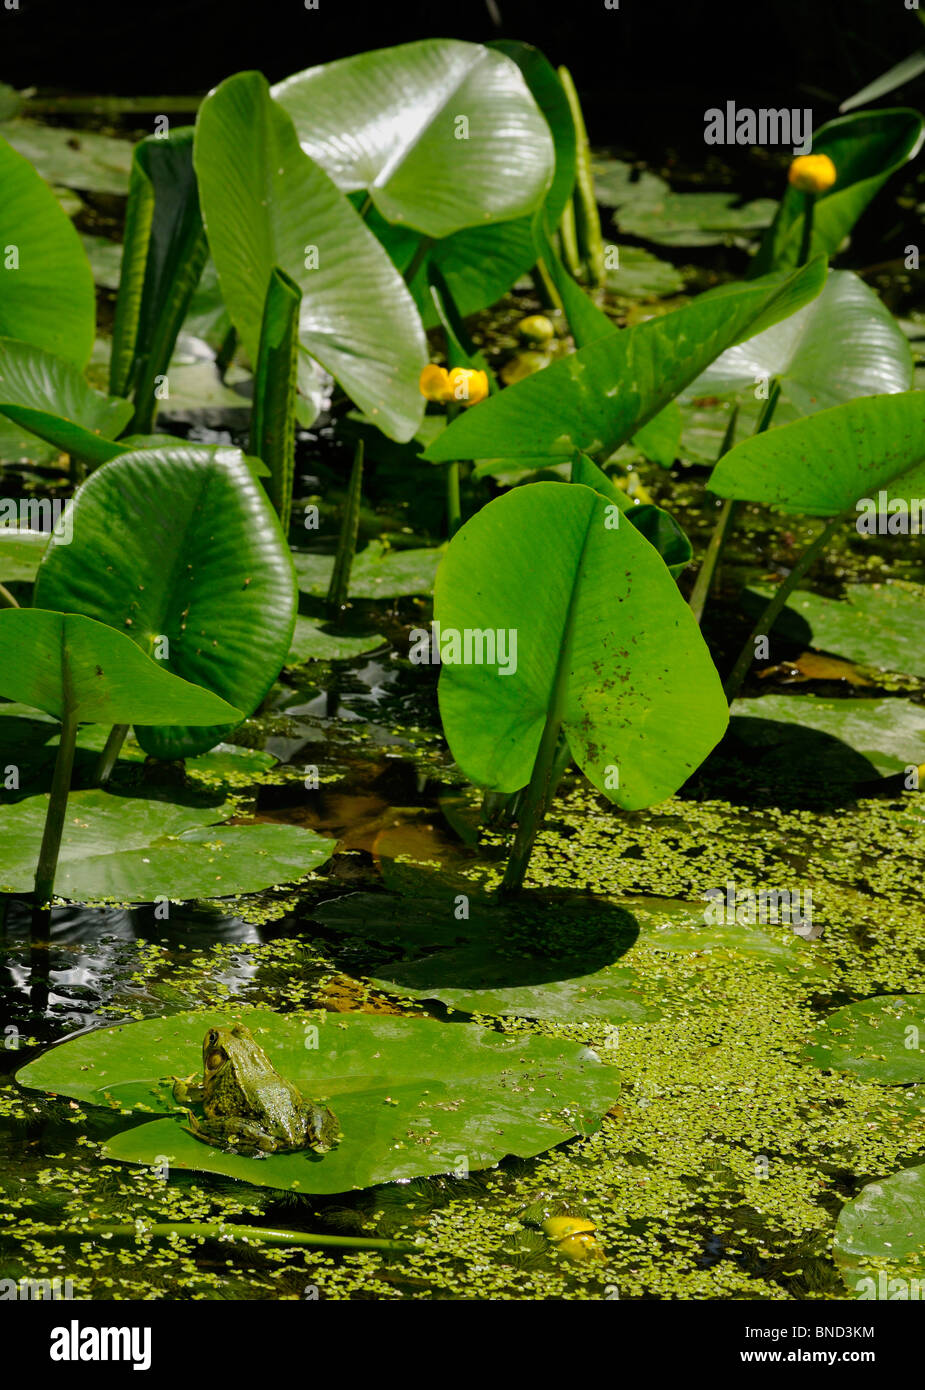 Rana Verde en un estanque de flor amarilla hoja de lirio flotando sobre el agua de un estanque con lenteja de agua Foto de stock